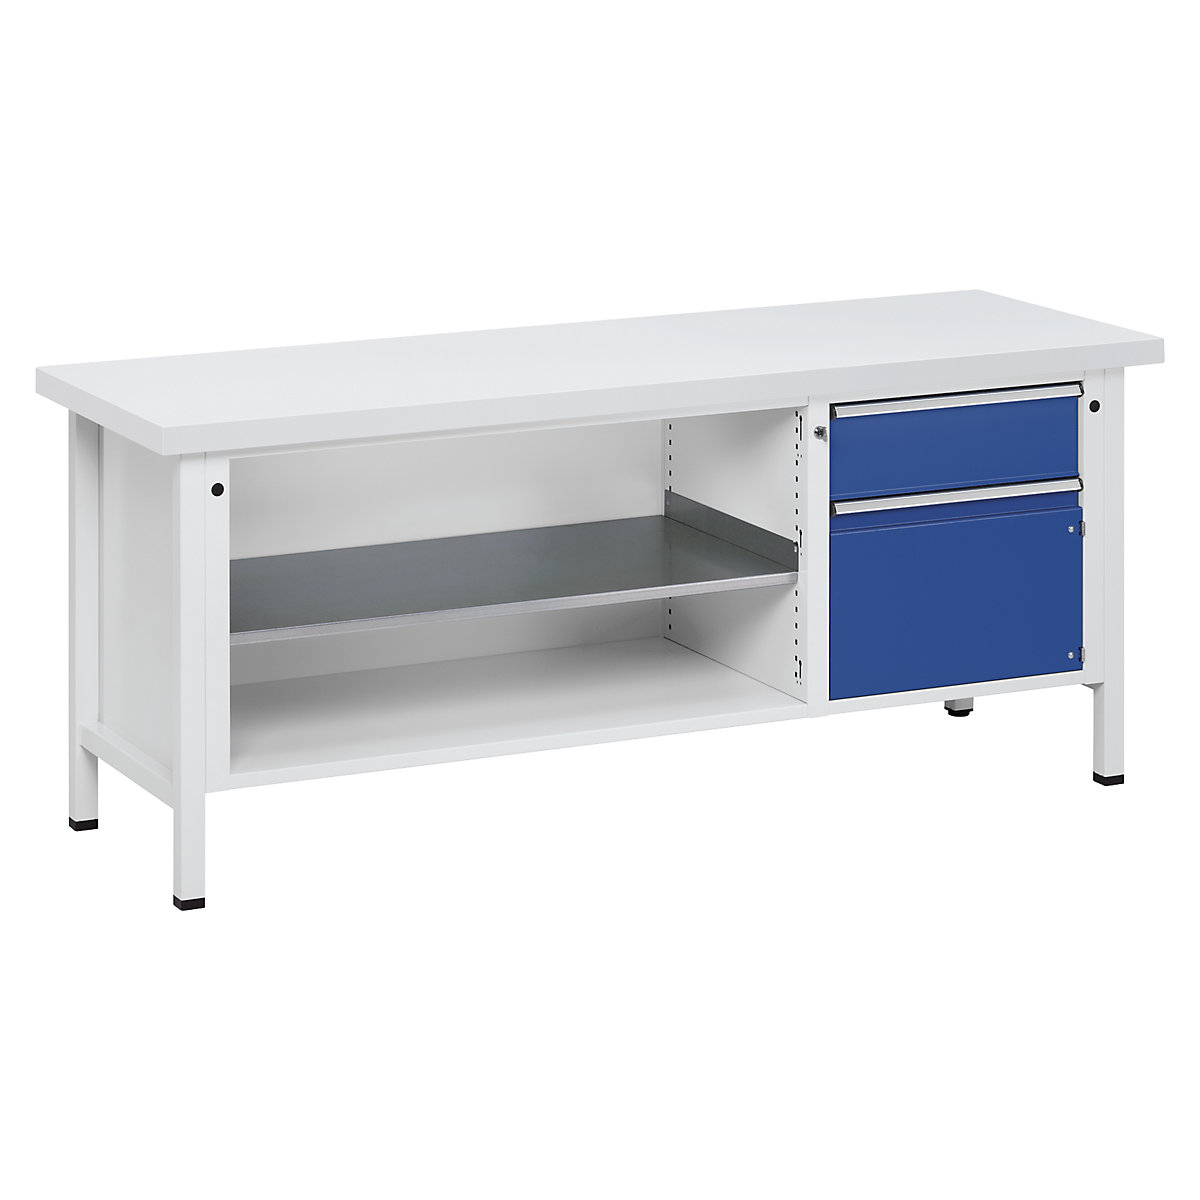 Dielenský stôl, stojanové vyhotovenie – ANKE, 1 zásuvka 180 mm, dvere 360 mm, univerzálna doska, čiastočný výsuv-10